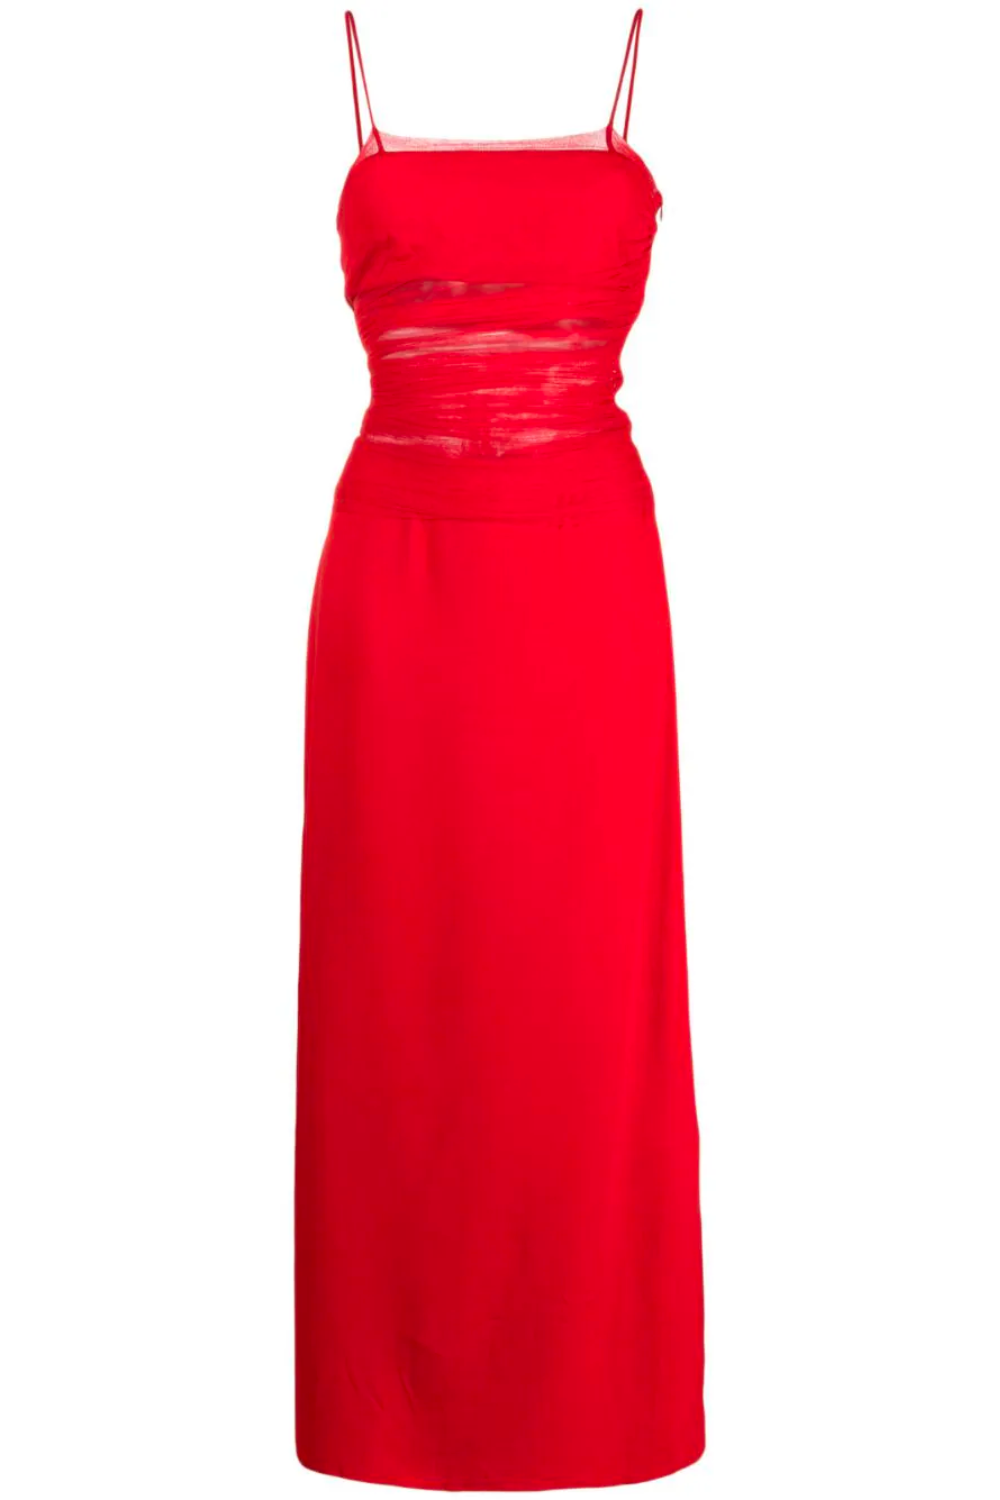 Christopher-Esber-Red-Dress